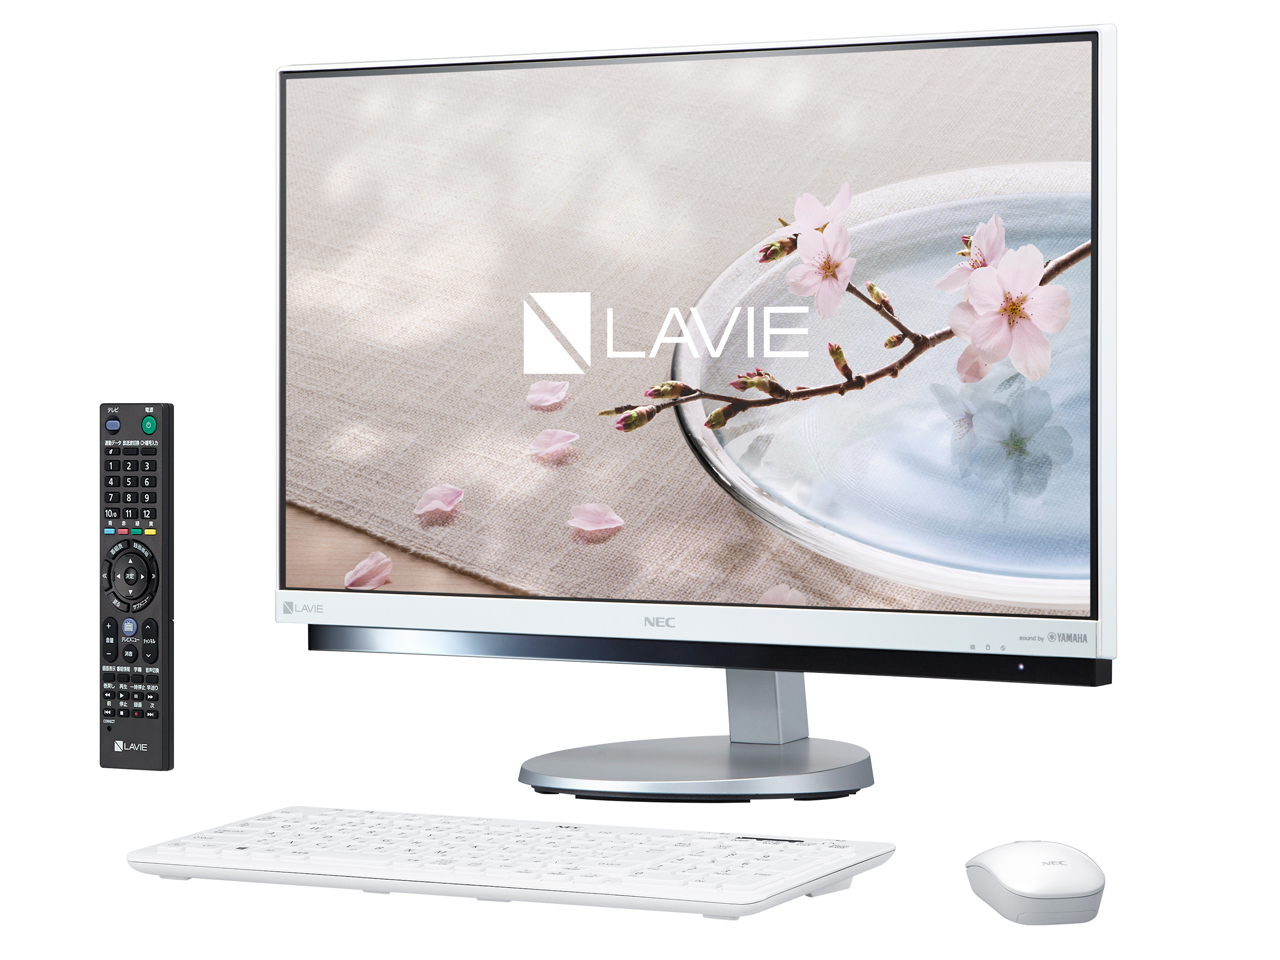 NEC LAVIE Desk All-in-one PC-DA770GAW 取扱説明書・レビュー記事 